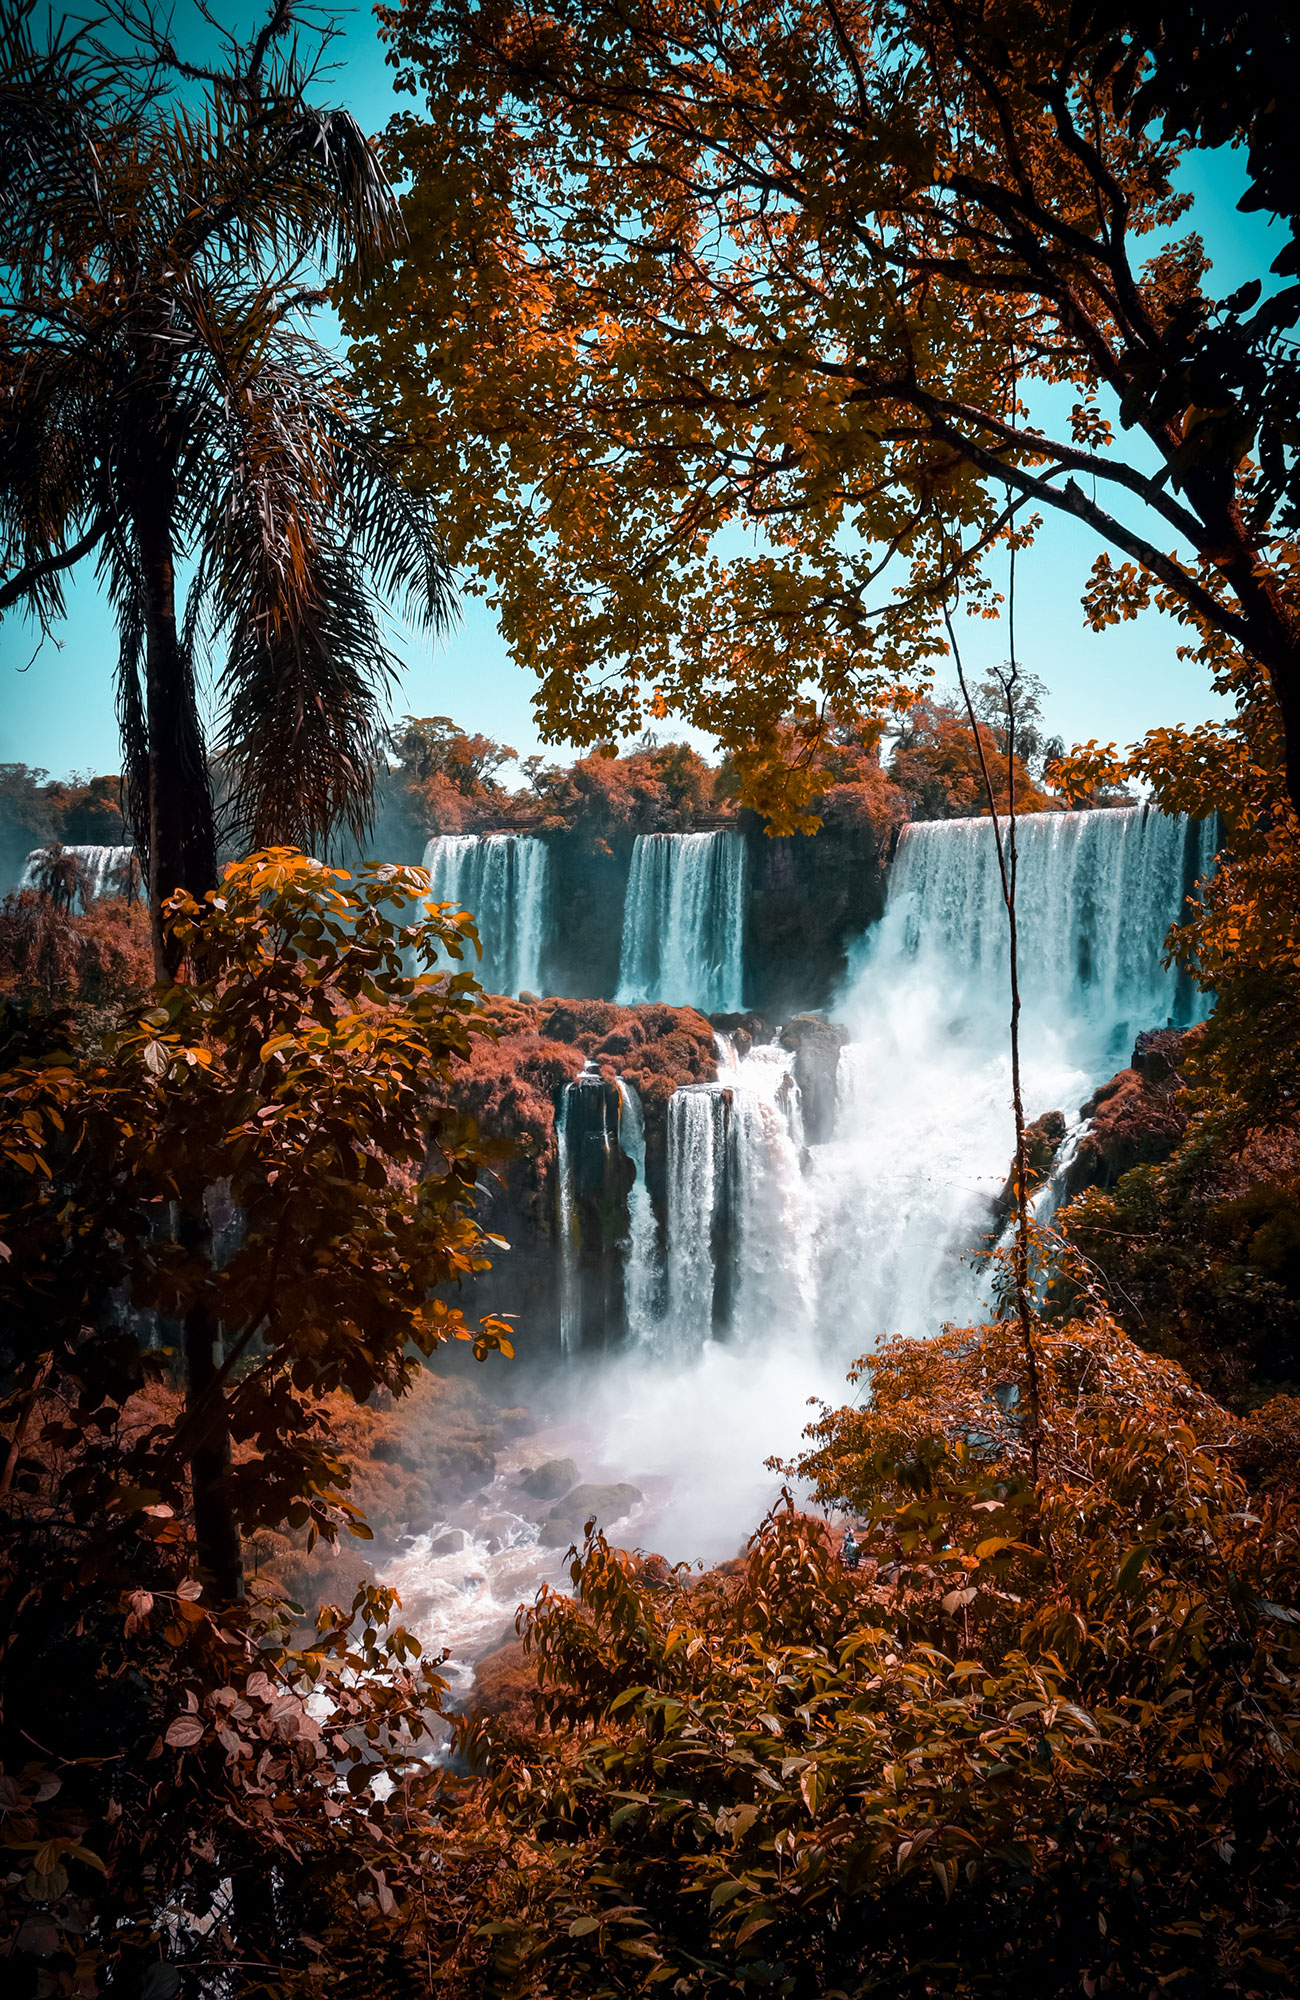 Iguaza Falls i argentina och brasilien